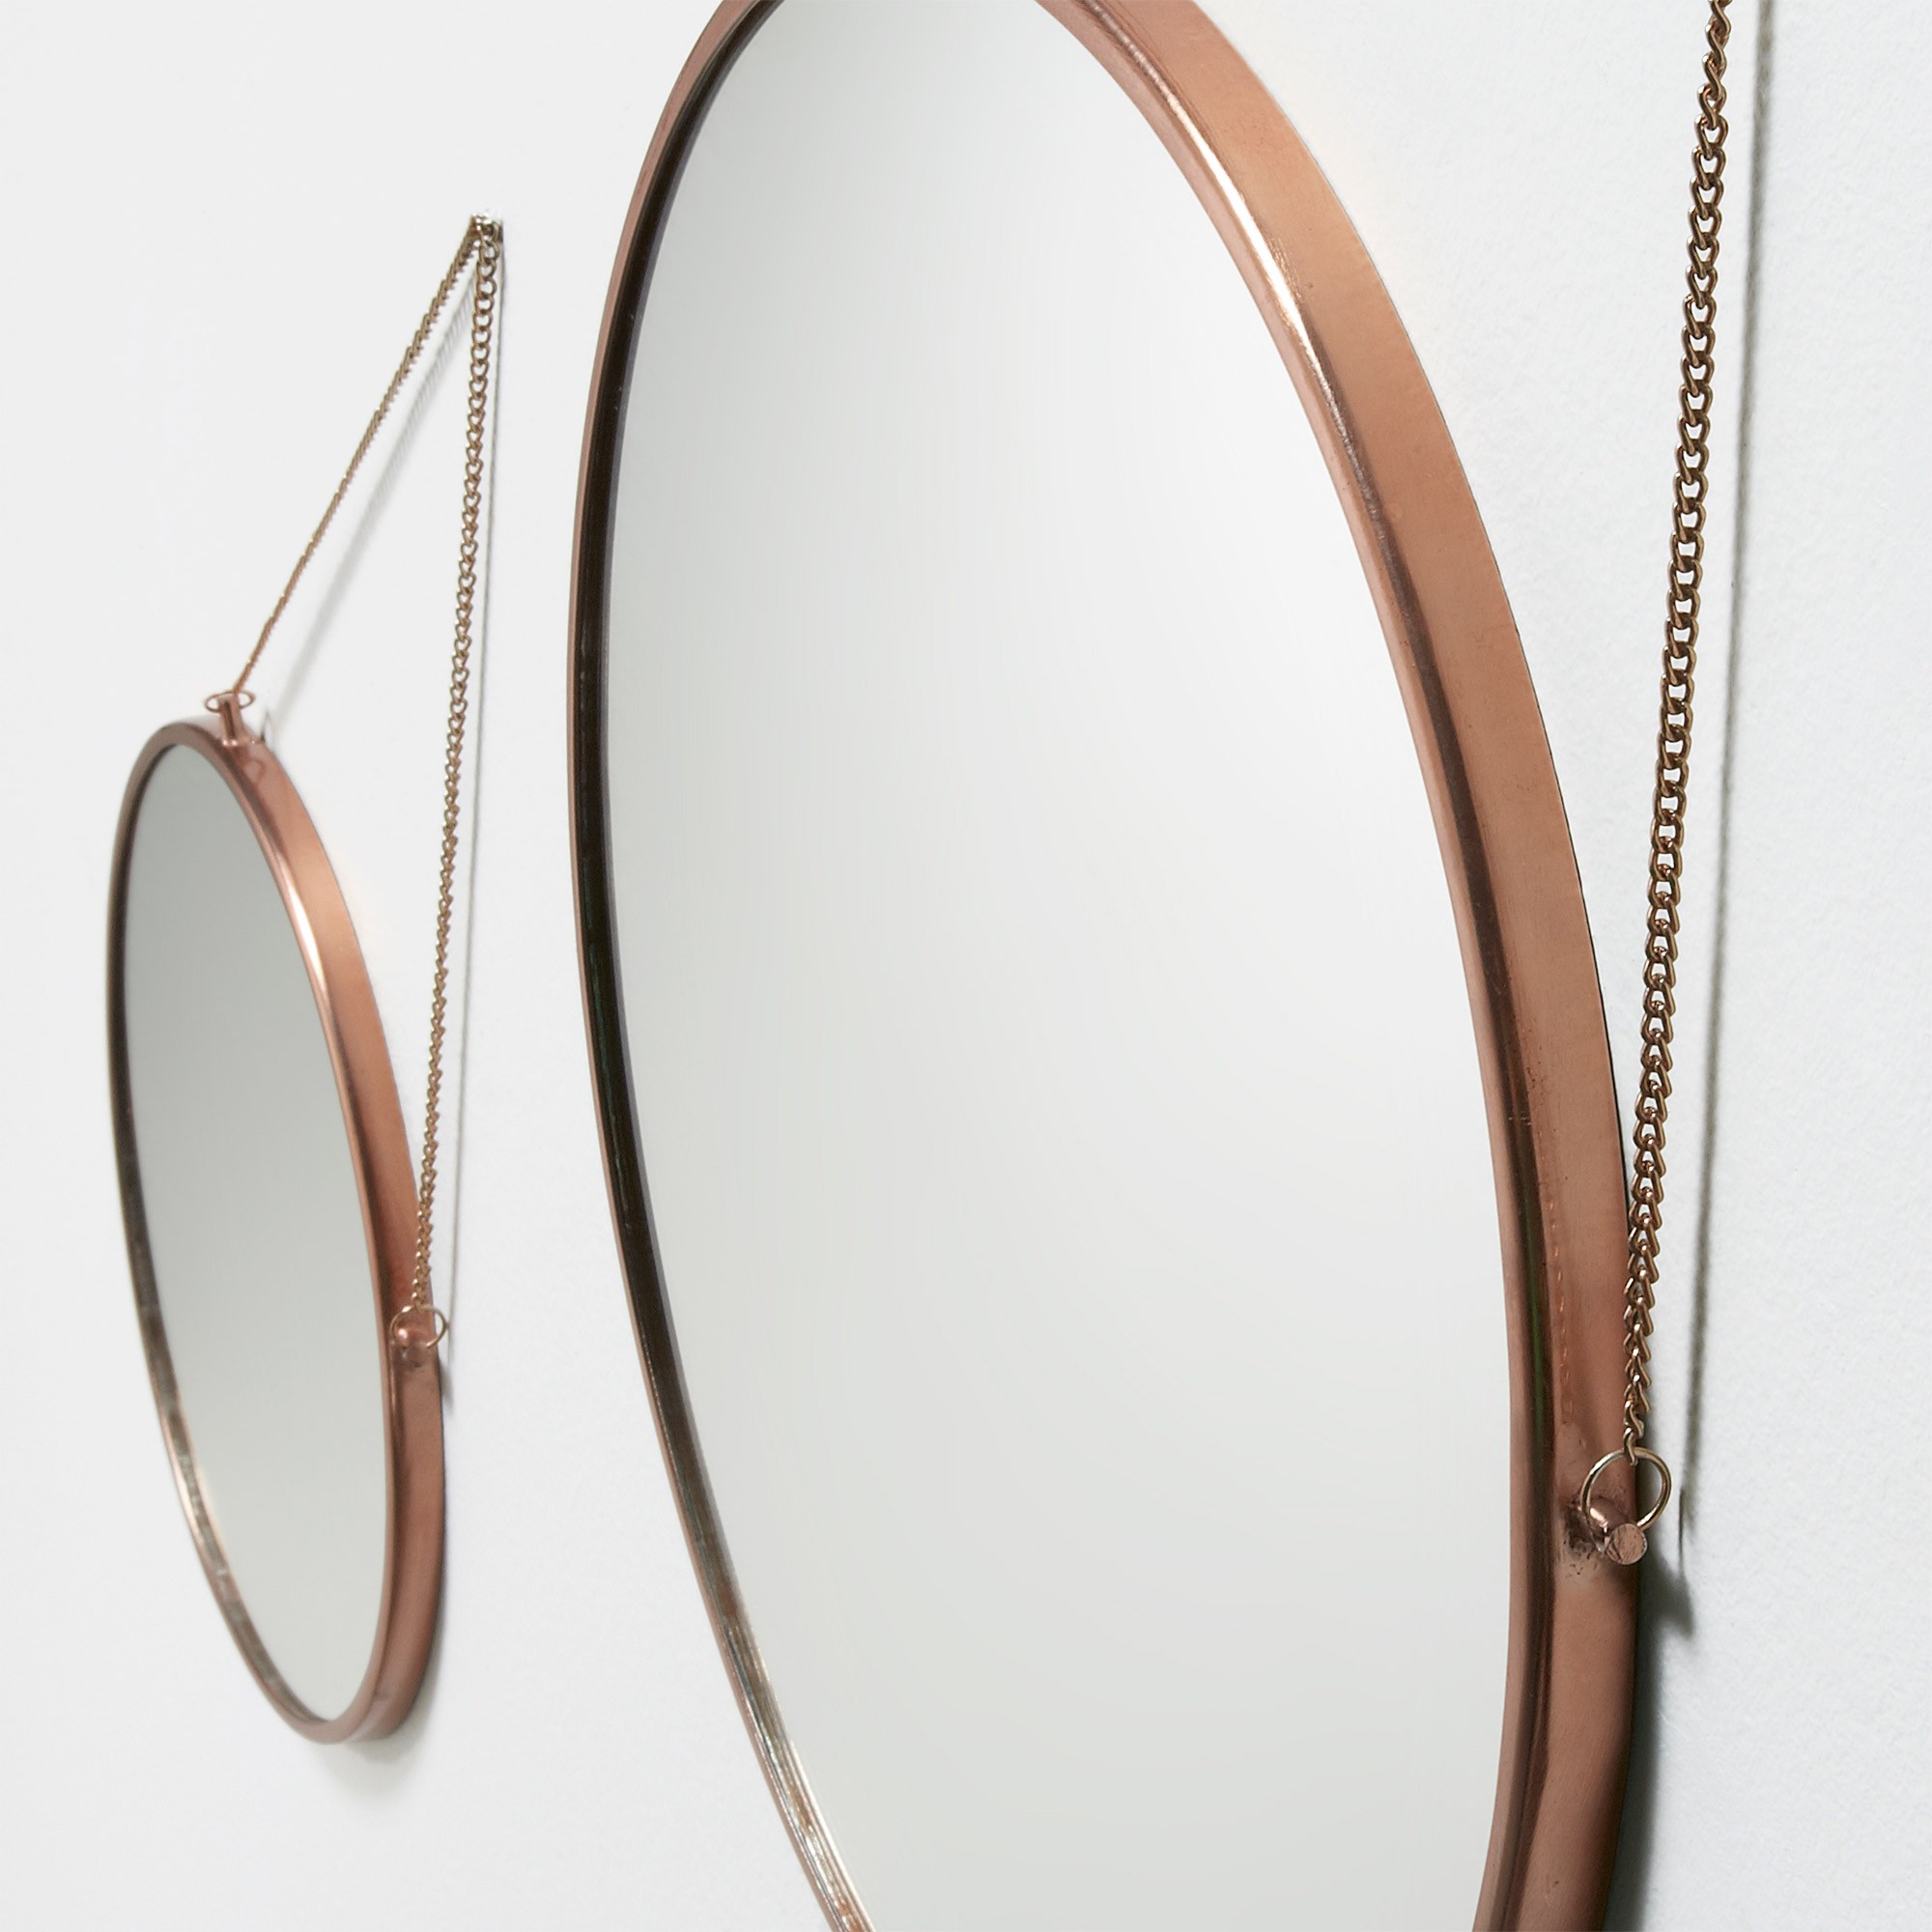 Купить комплект зеркал. Зеркало la forma. Набор круглых зеркал. Круглое зеркало на ремне. Стильные зеркала на подвесах.